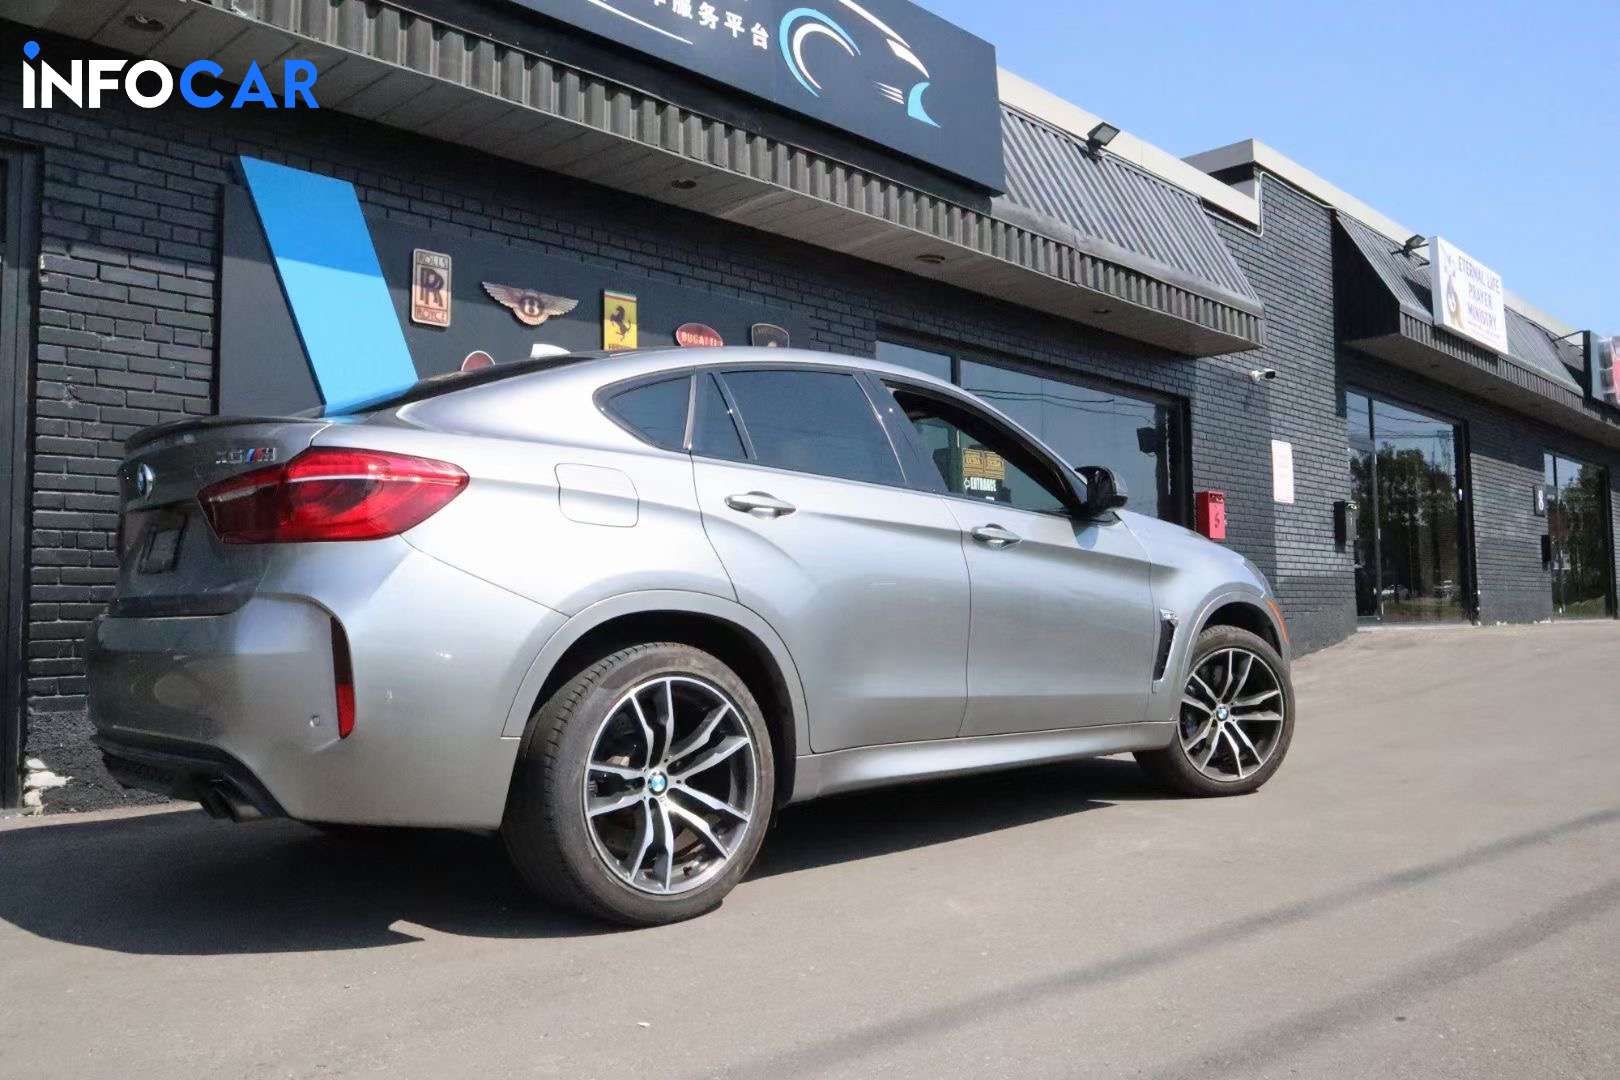 2018 BMW X6 M - INFOCAR - Toronto Auto Trading Platform